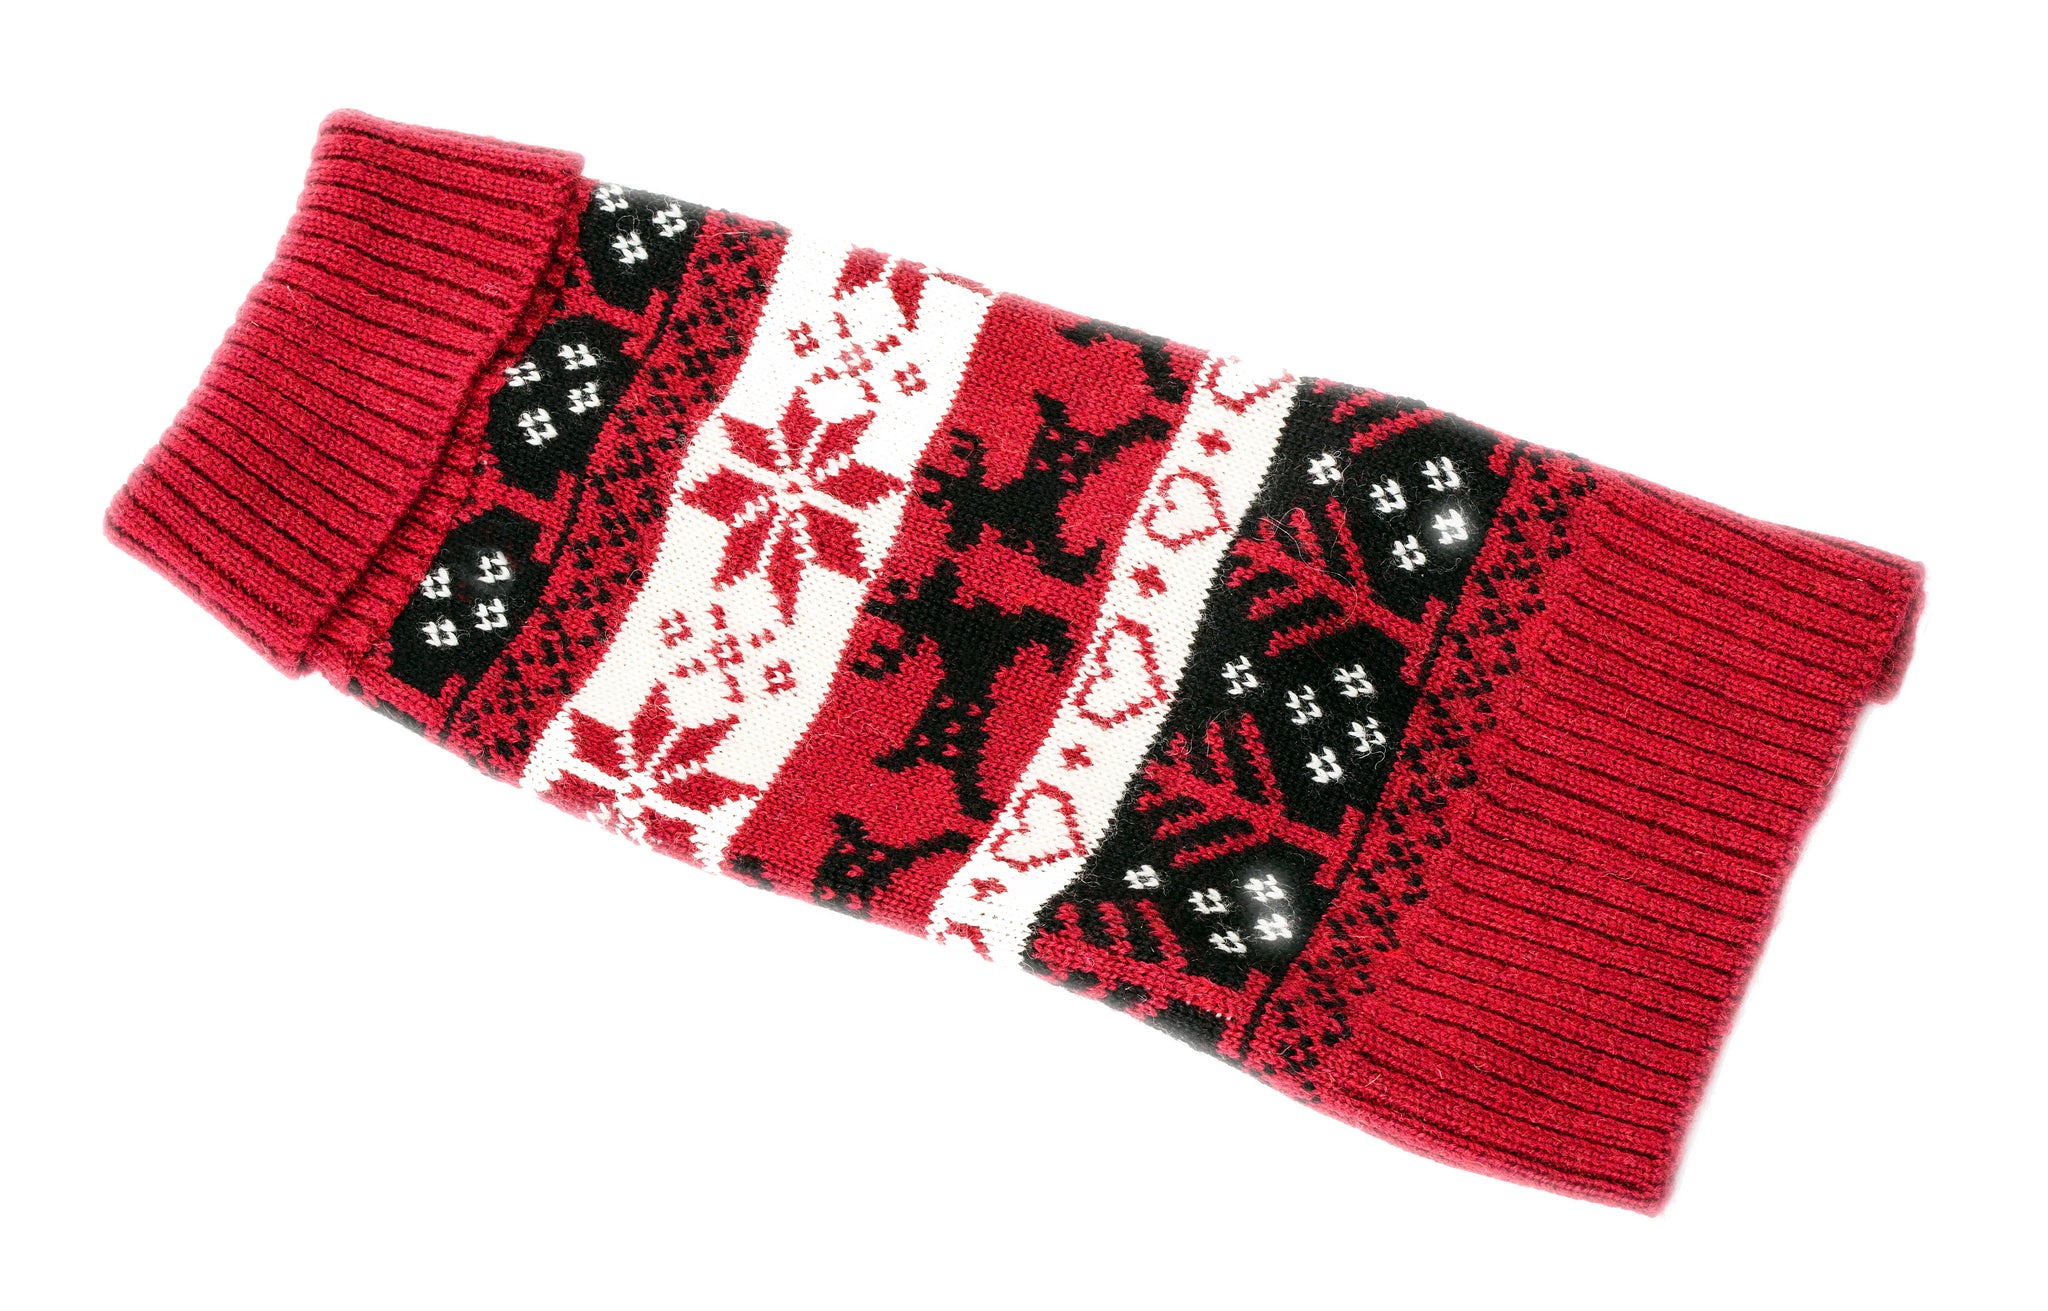 Wool Dog Sweater - Red Ski Sweater